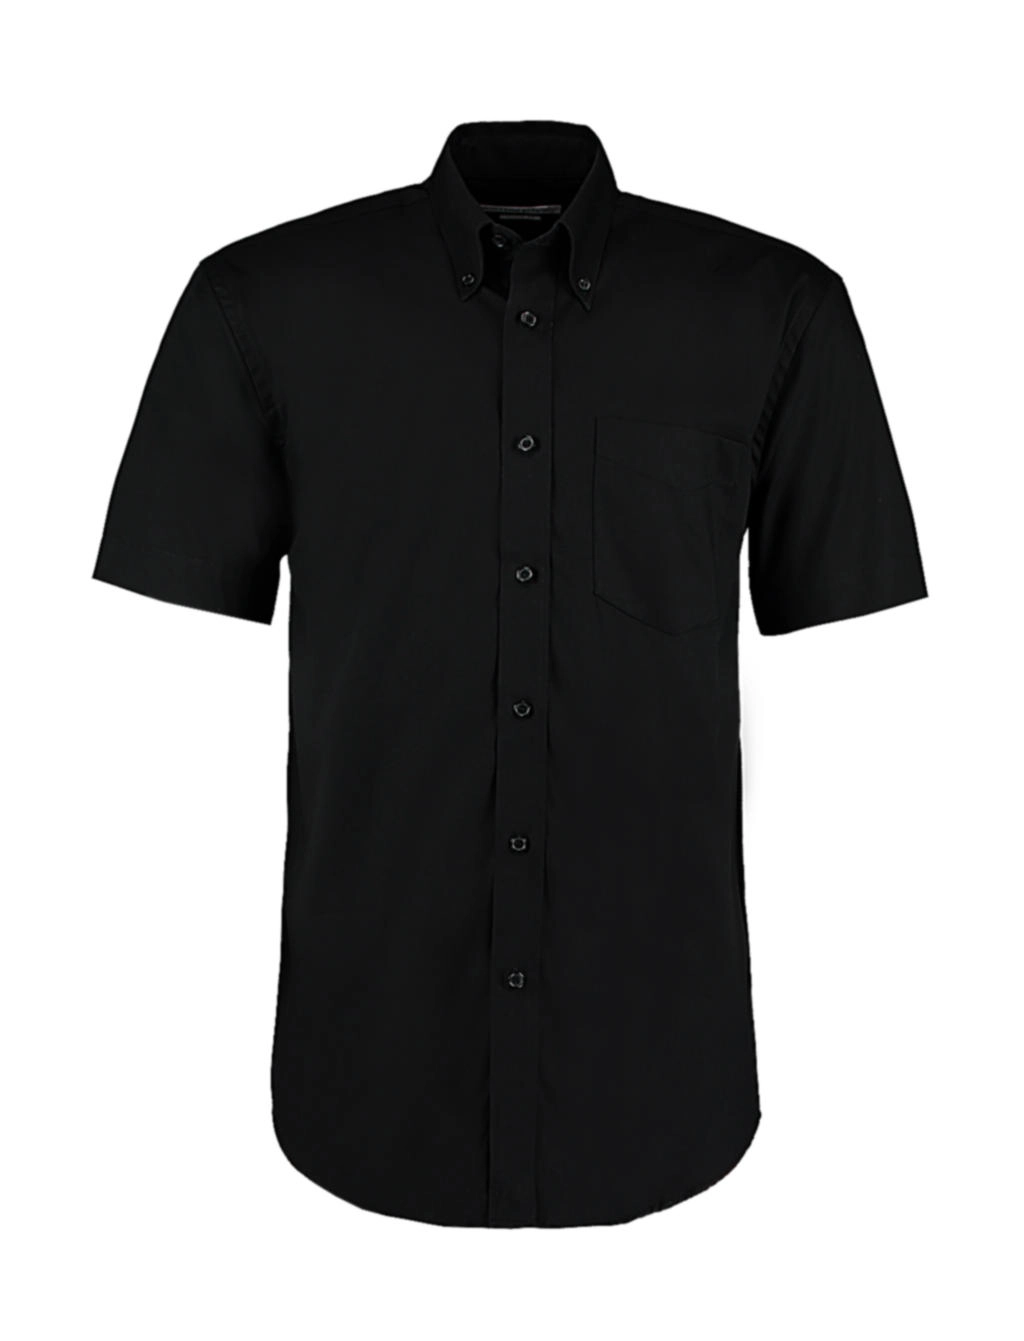 Classic Fit Premium Oxford Shirt SSL zum Besticken und Bedrucken in der Farbe Black mit Ihren Logo, Schriftzug oder Motiv.